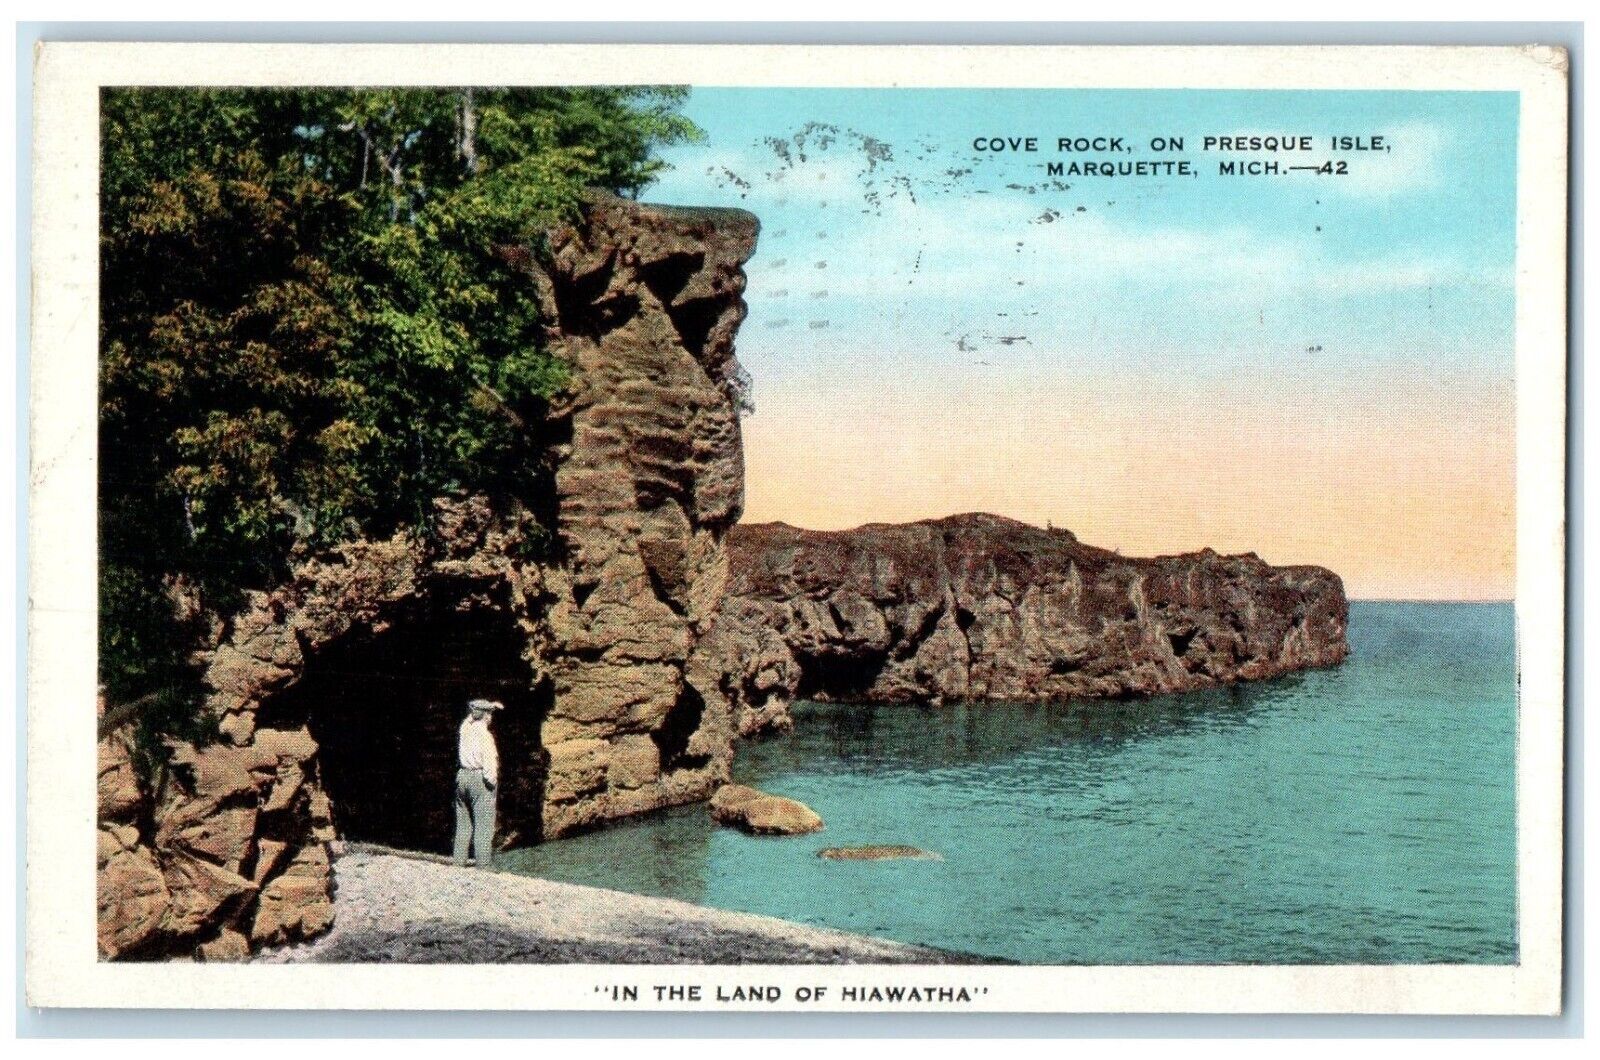 1934 View Of Cove Rock On Presque Isle Marquette Michigan MI Vintage Postcard